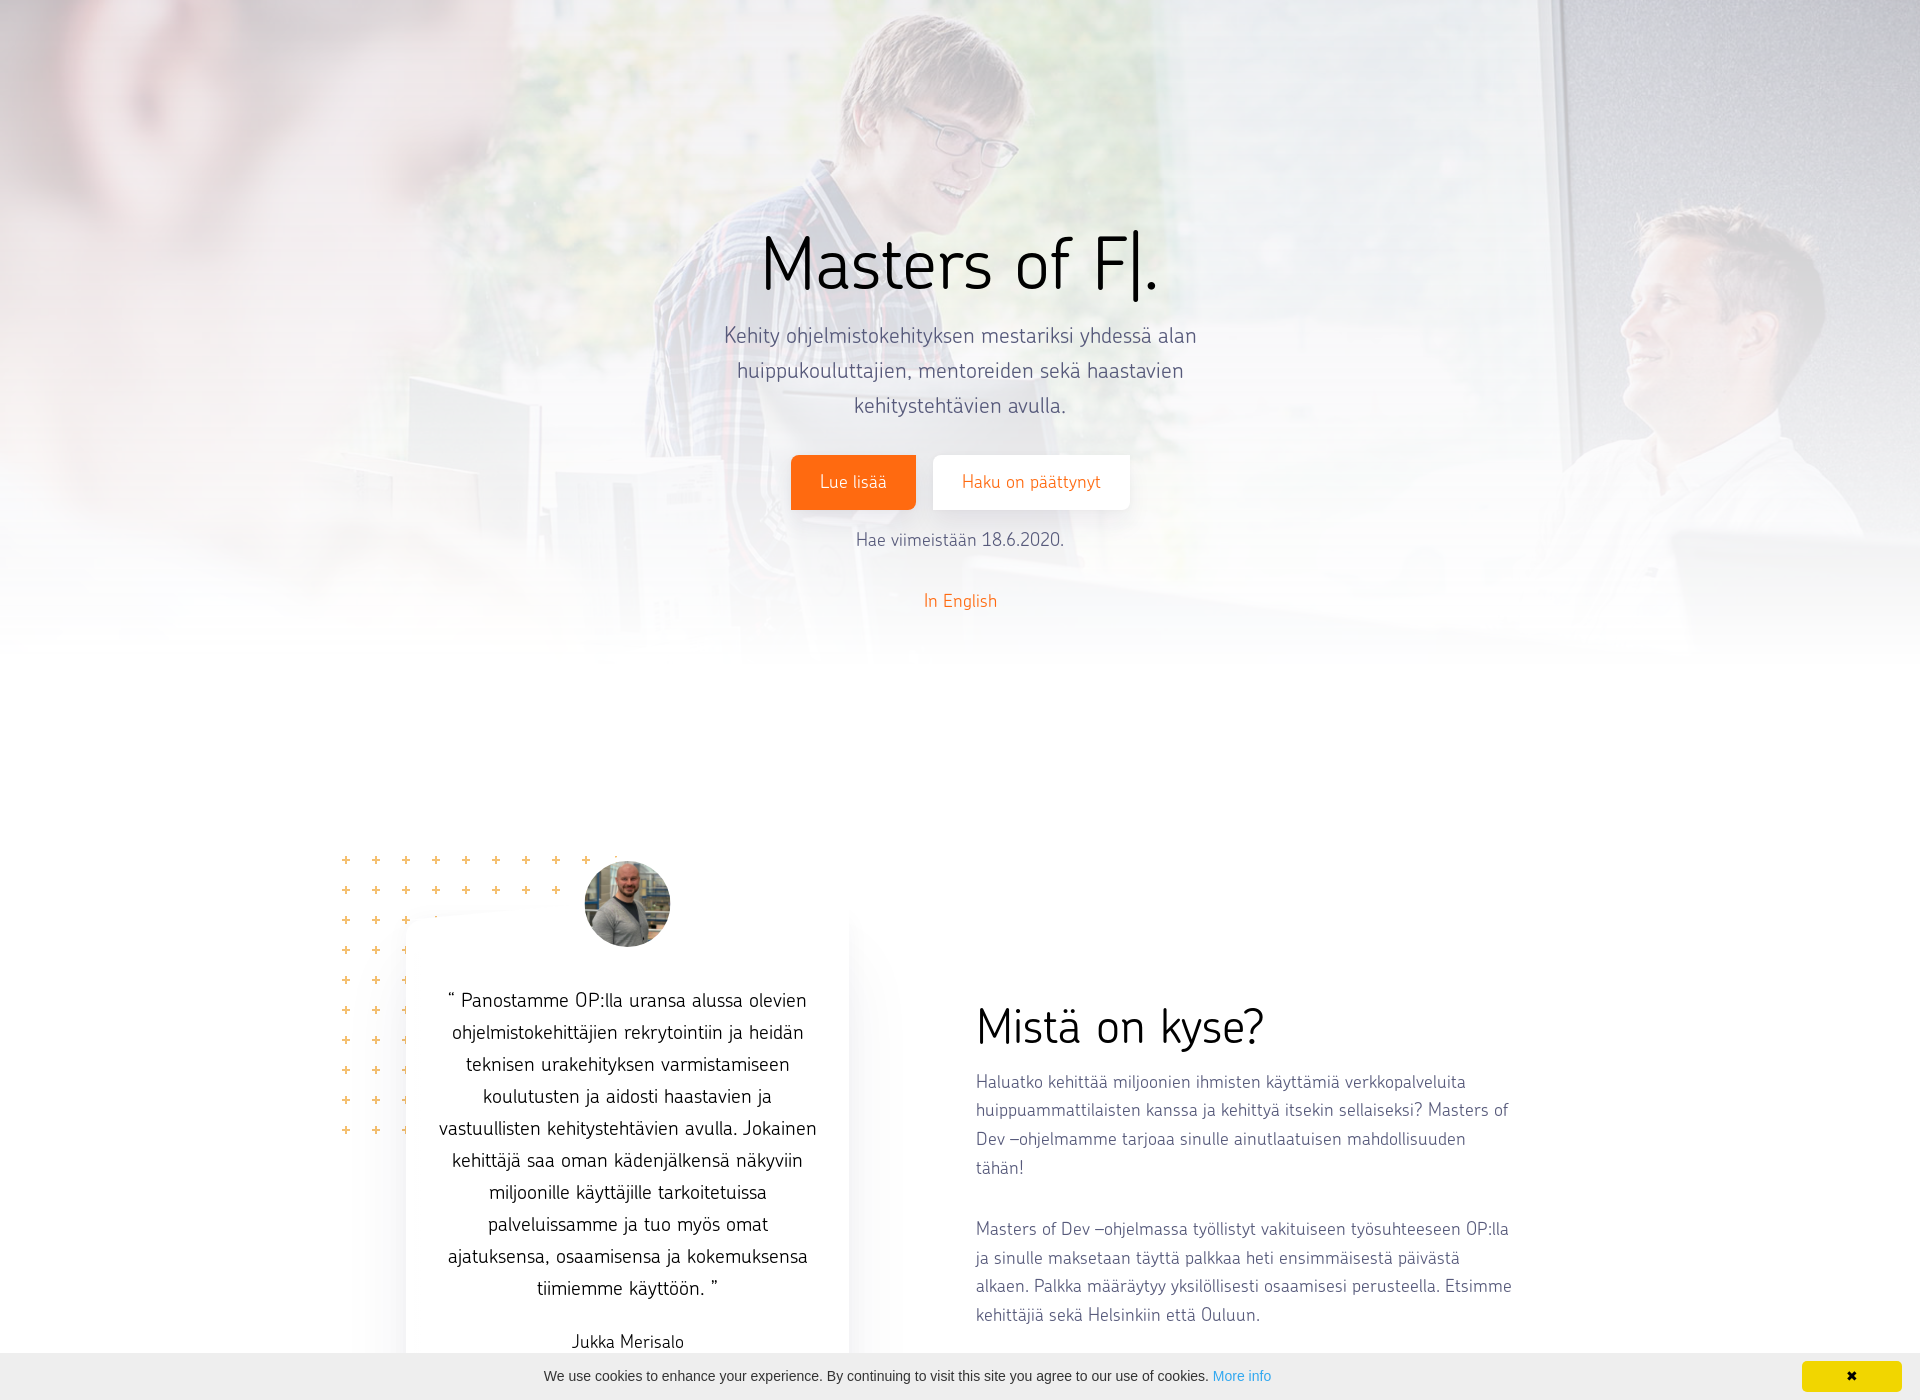 Skärmdump för mastersofdev.fi